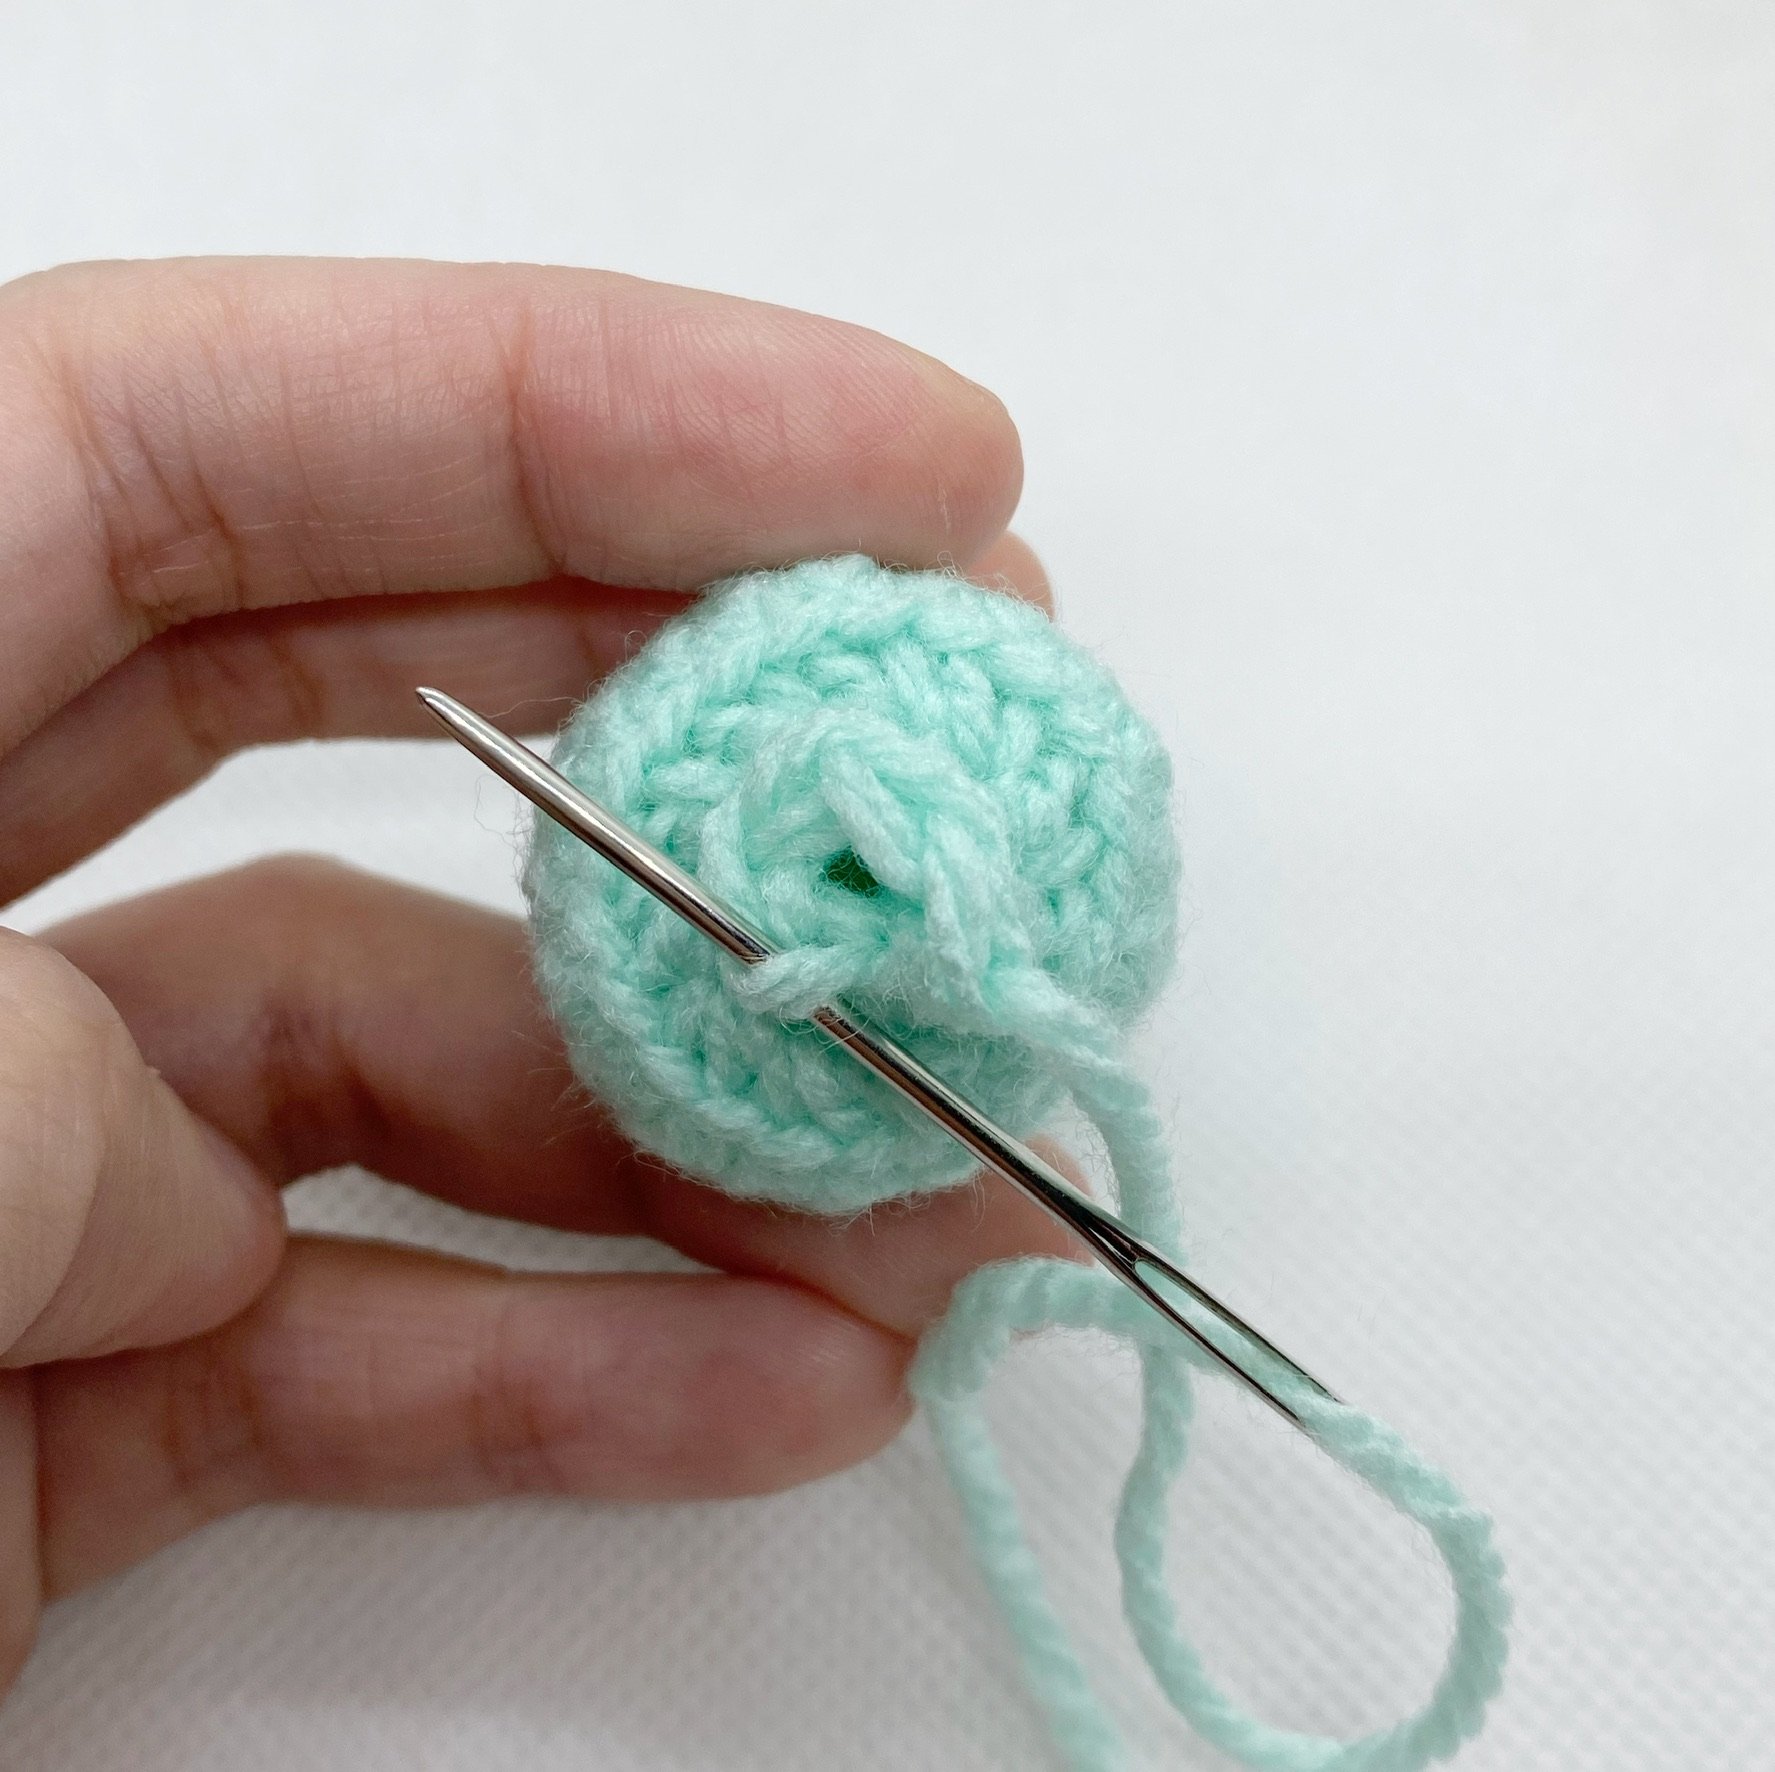 Learn to Crochet Amigurumi